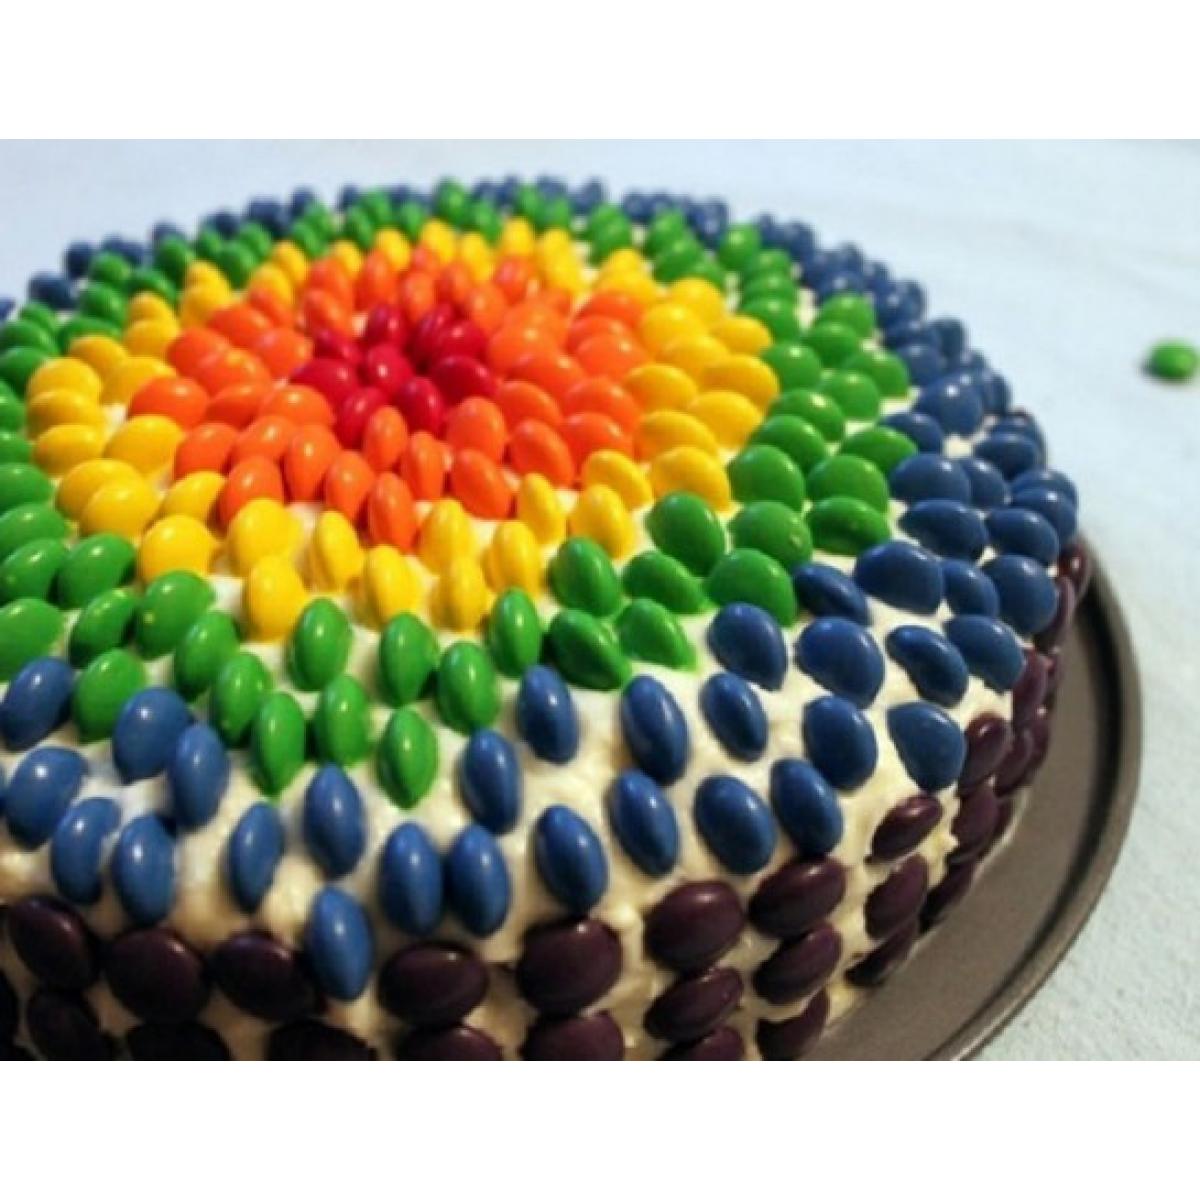 Чем украсить торт в домашних условиях на день рождения: Как украсить торт на день рождения? — ISaloni — студия интерьера, салон обоев